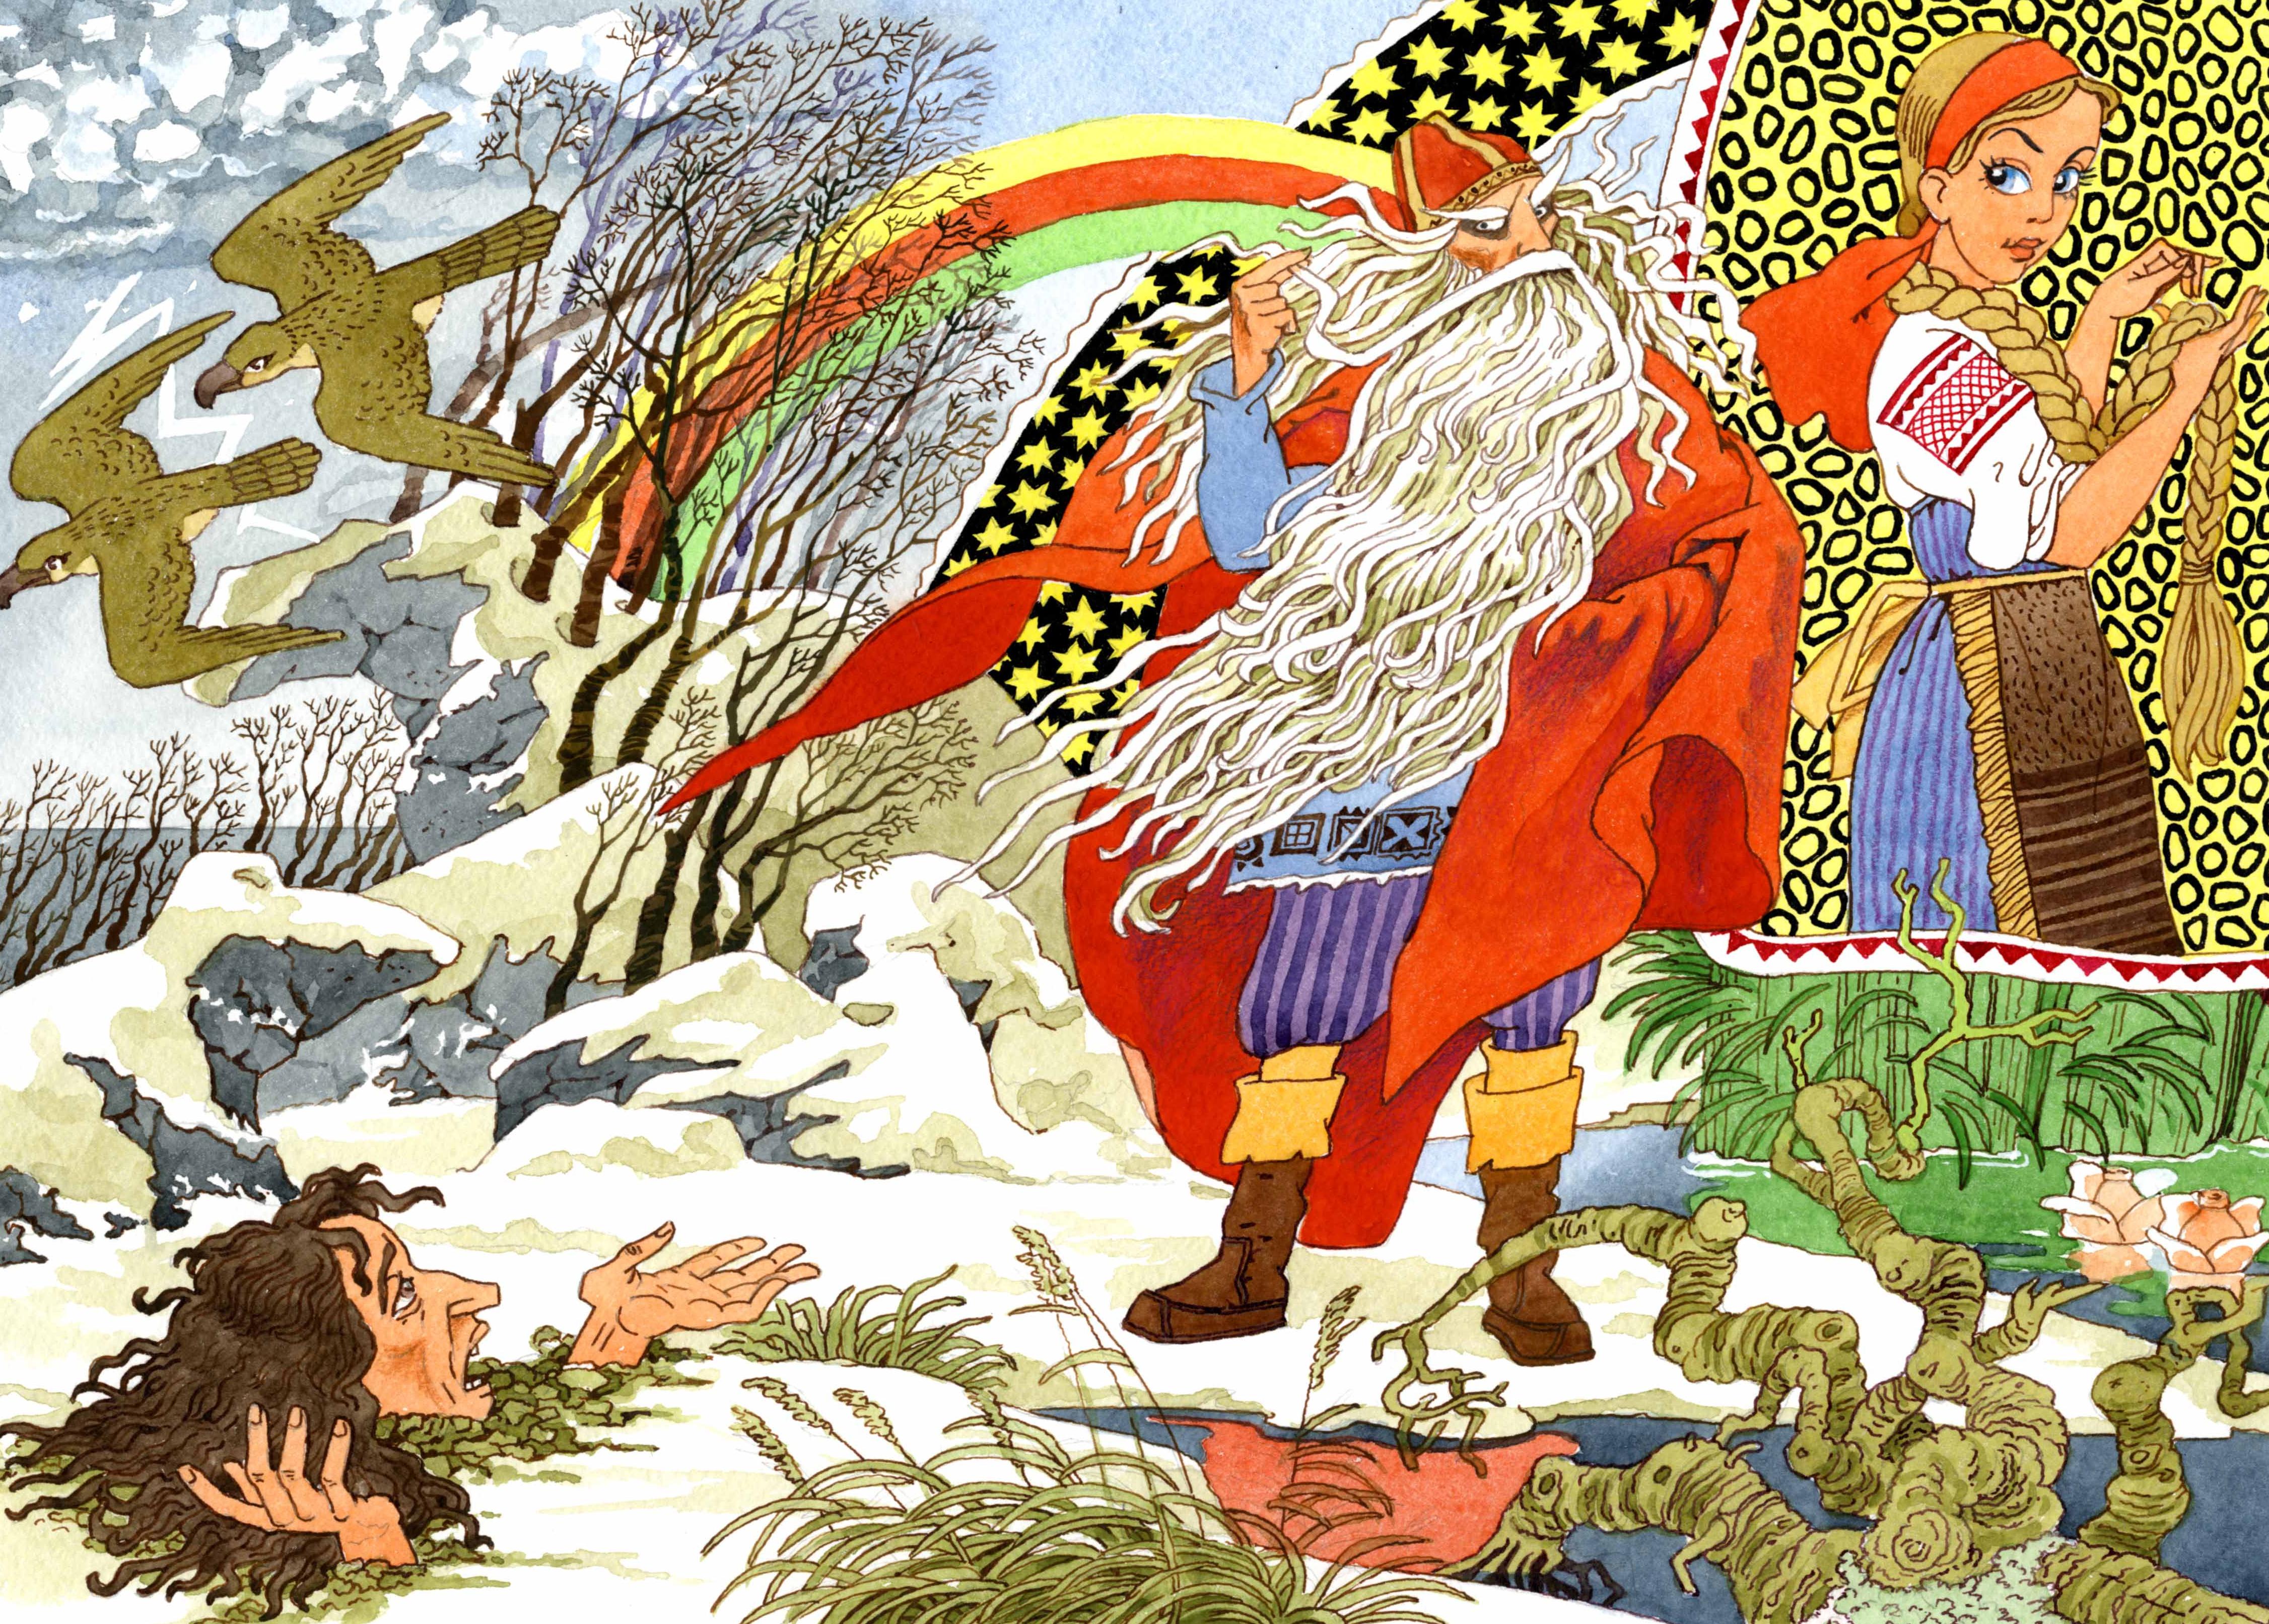 Petroskoilaisen taiteilijan Vladimir Lukkosen värikkäät kuvitukset houkuttelevat lapsia Kalevalan maailmaan. 0+. Kuva: Vladimir Lukkosen kuvitus